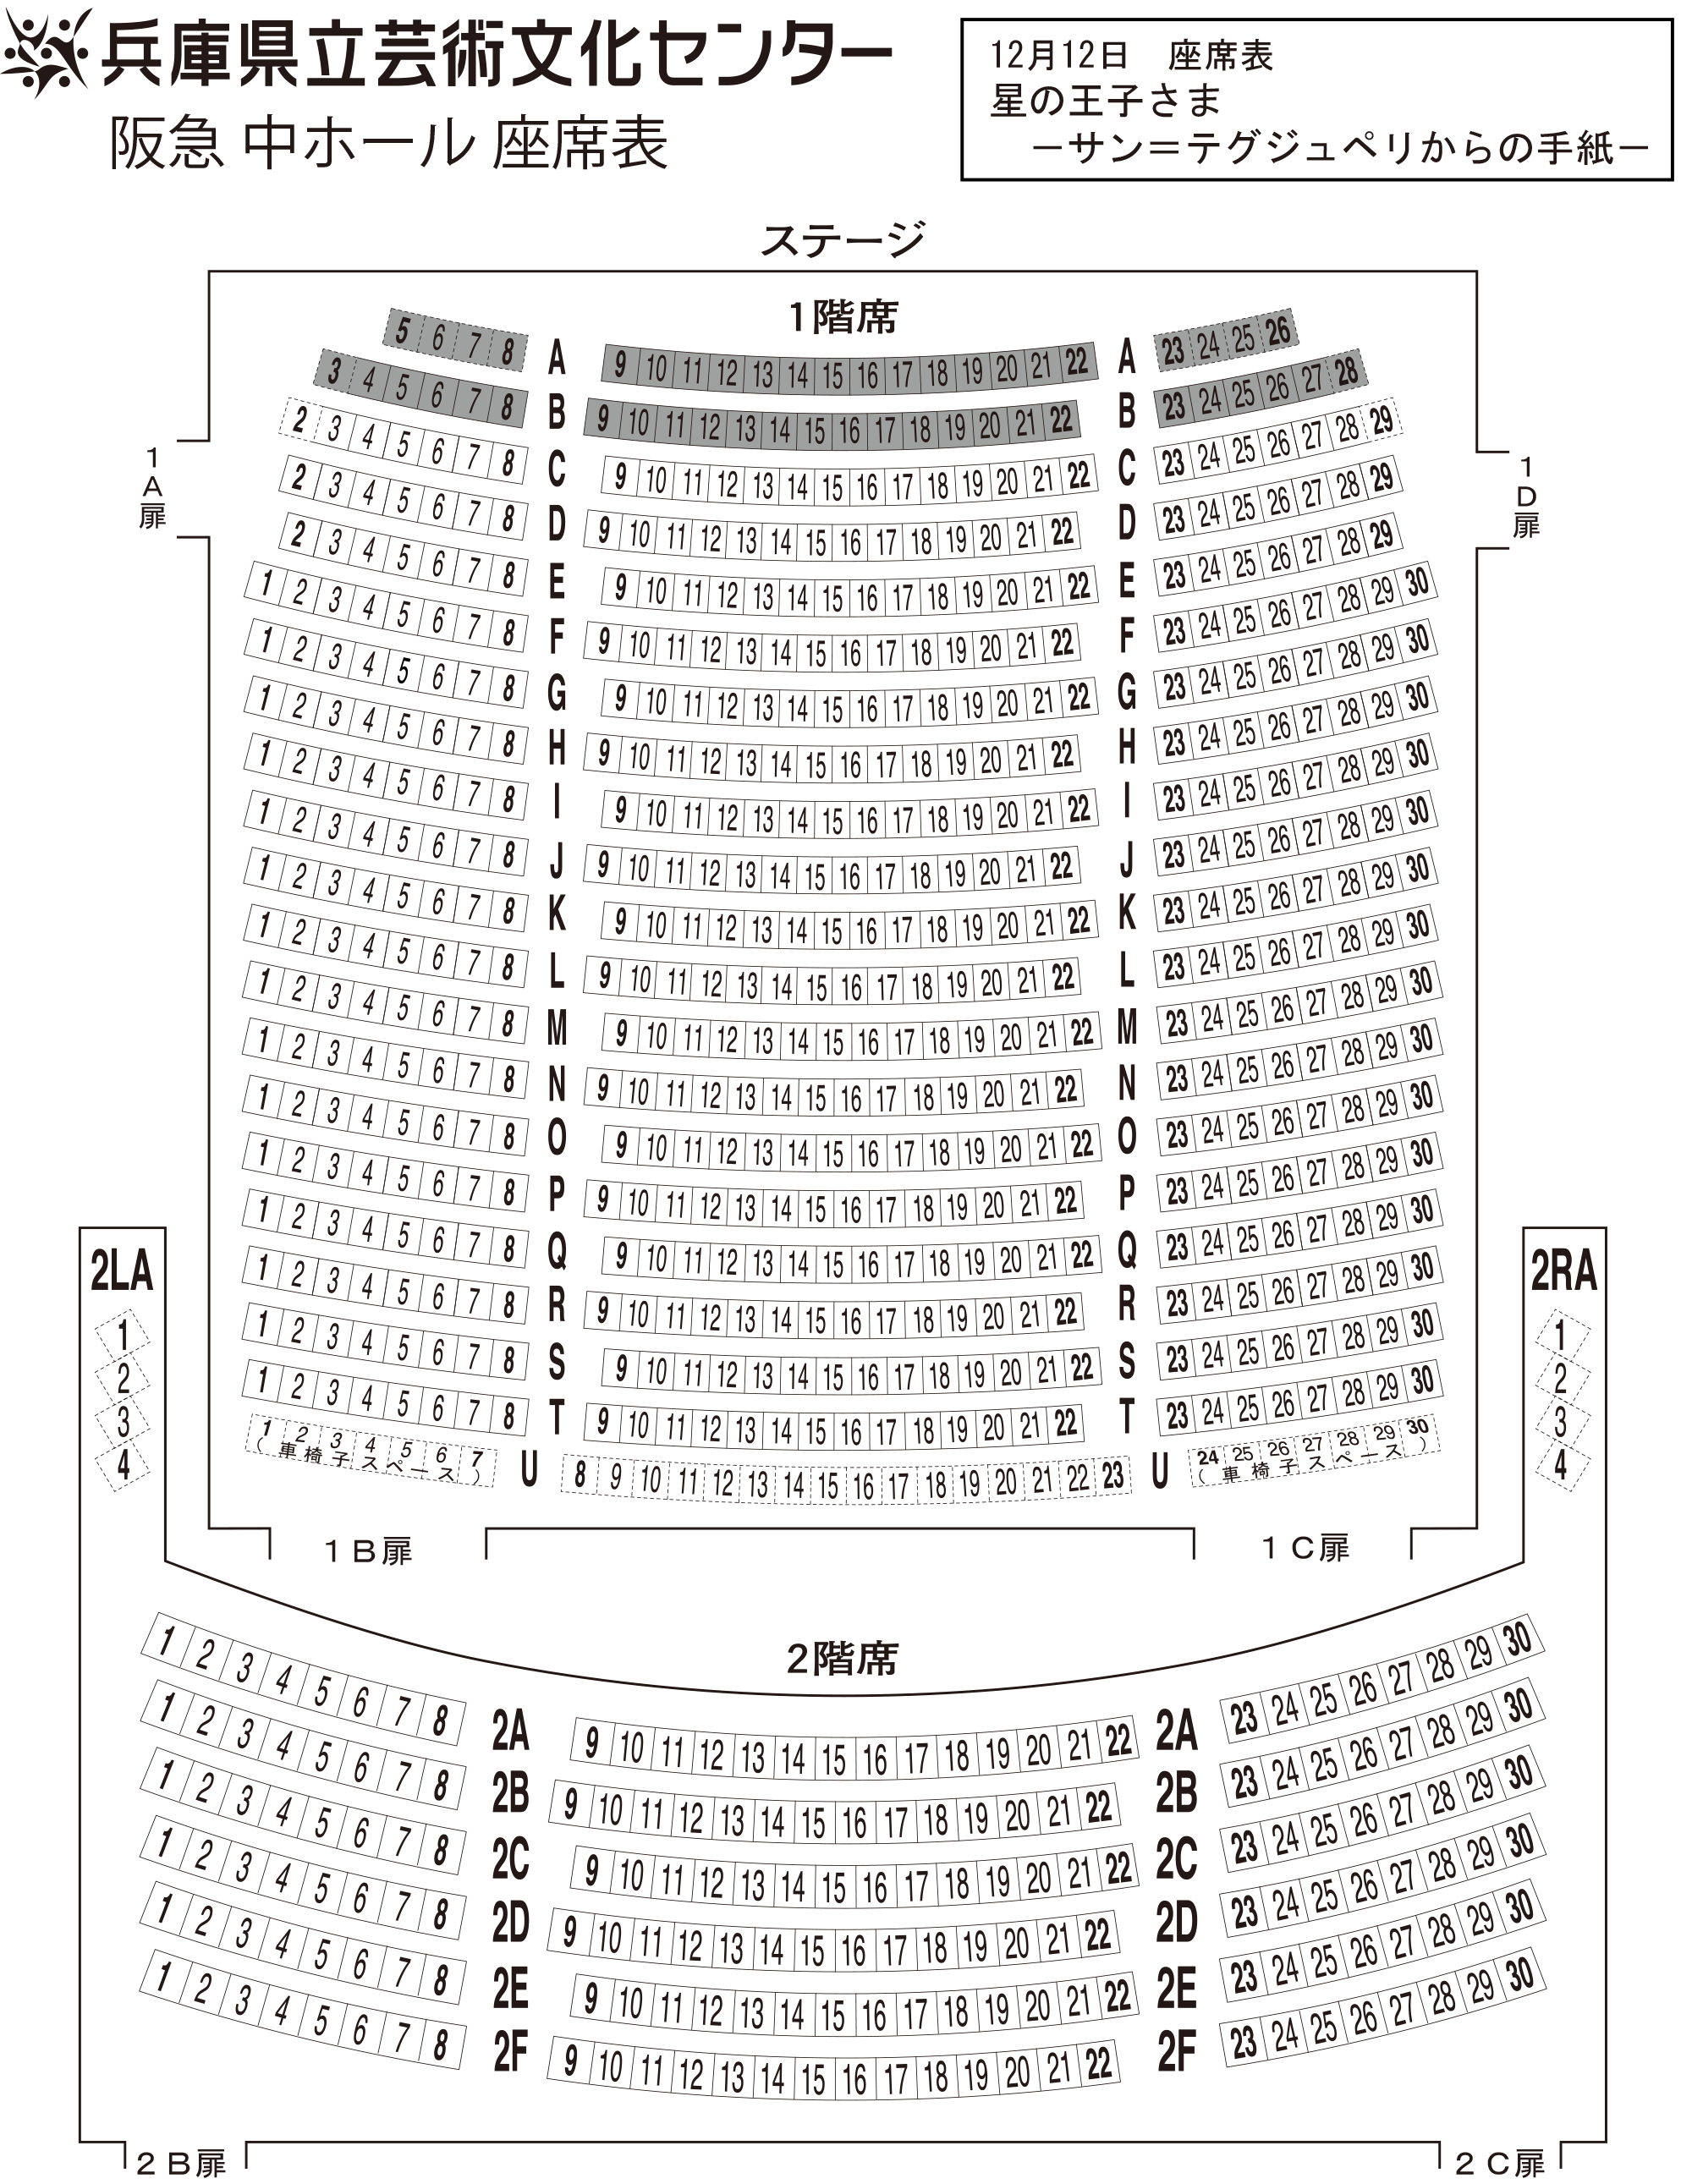 阪急 中ホール座席表